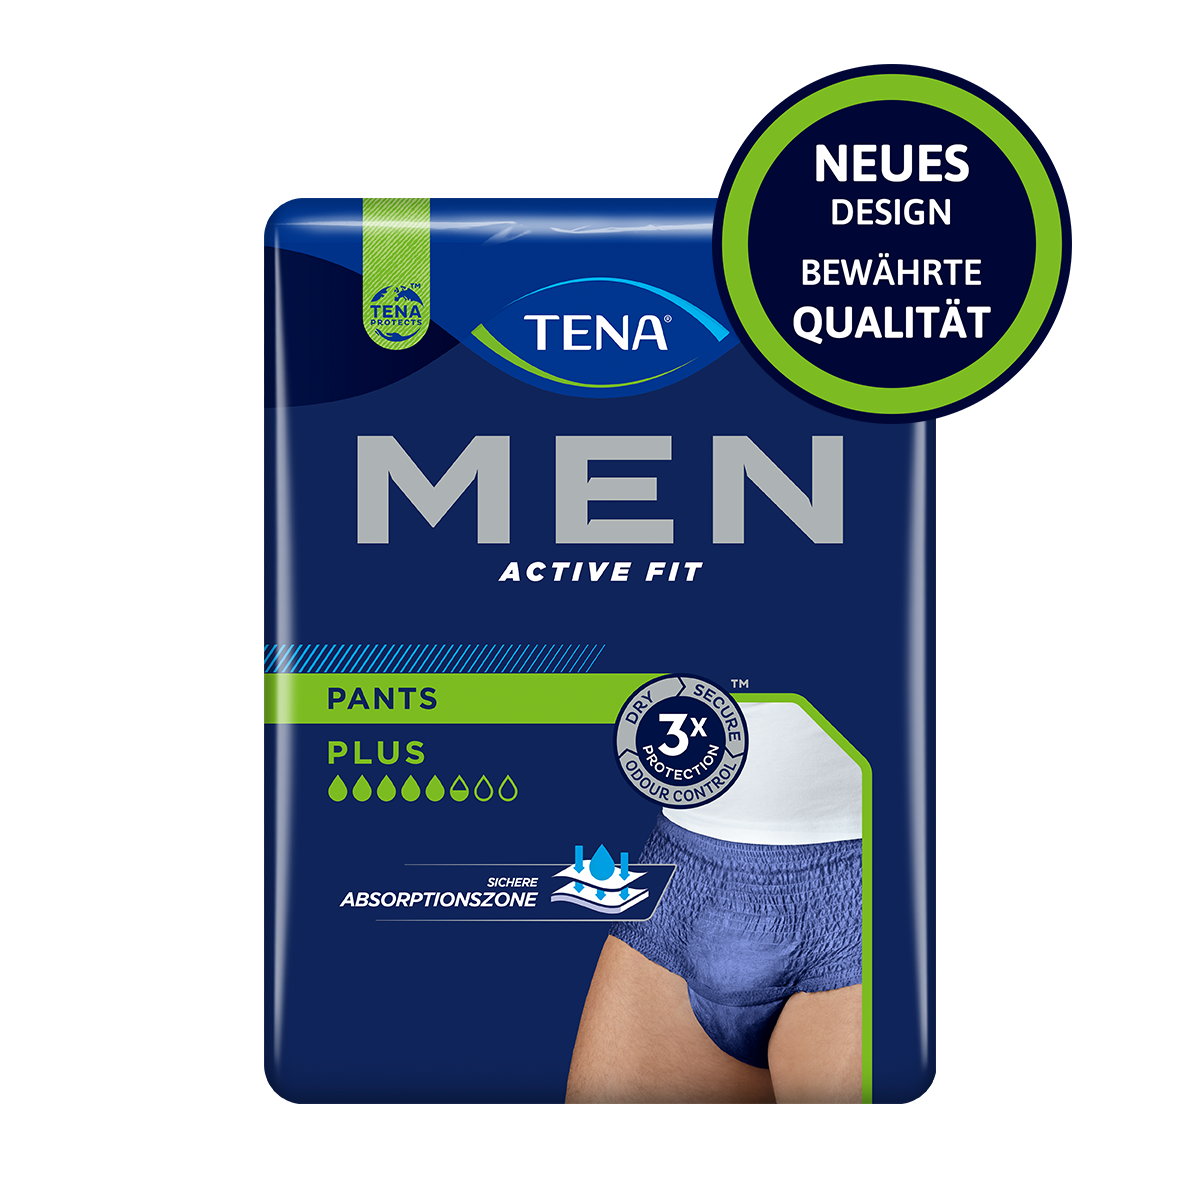 Abbildung eines Beutel Tena Men Active Fit Pants in blau, Größe S-M